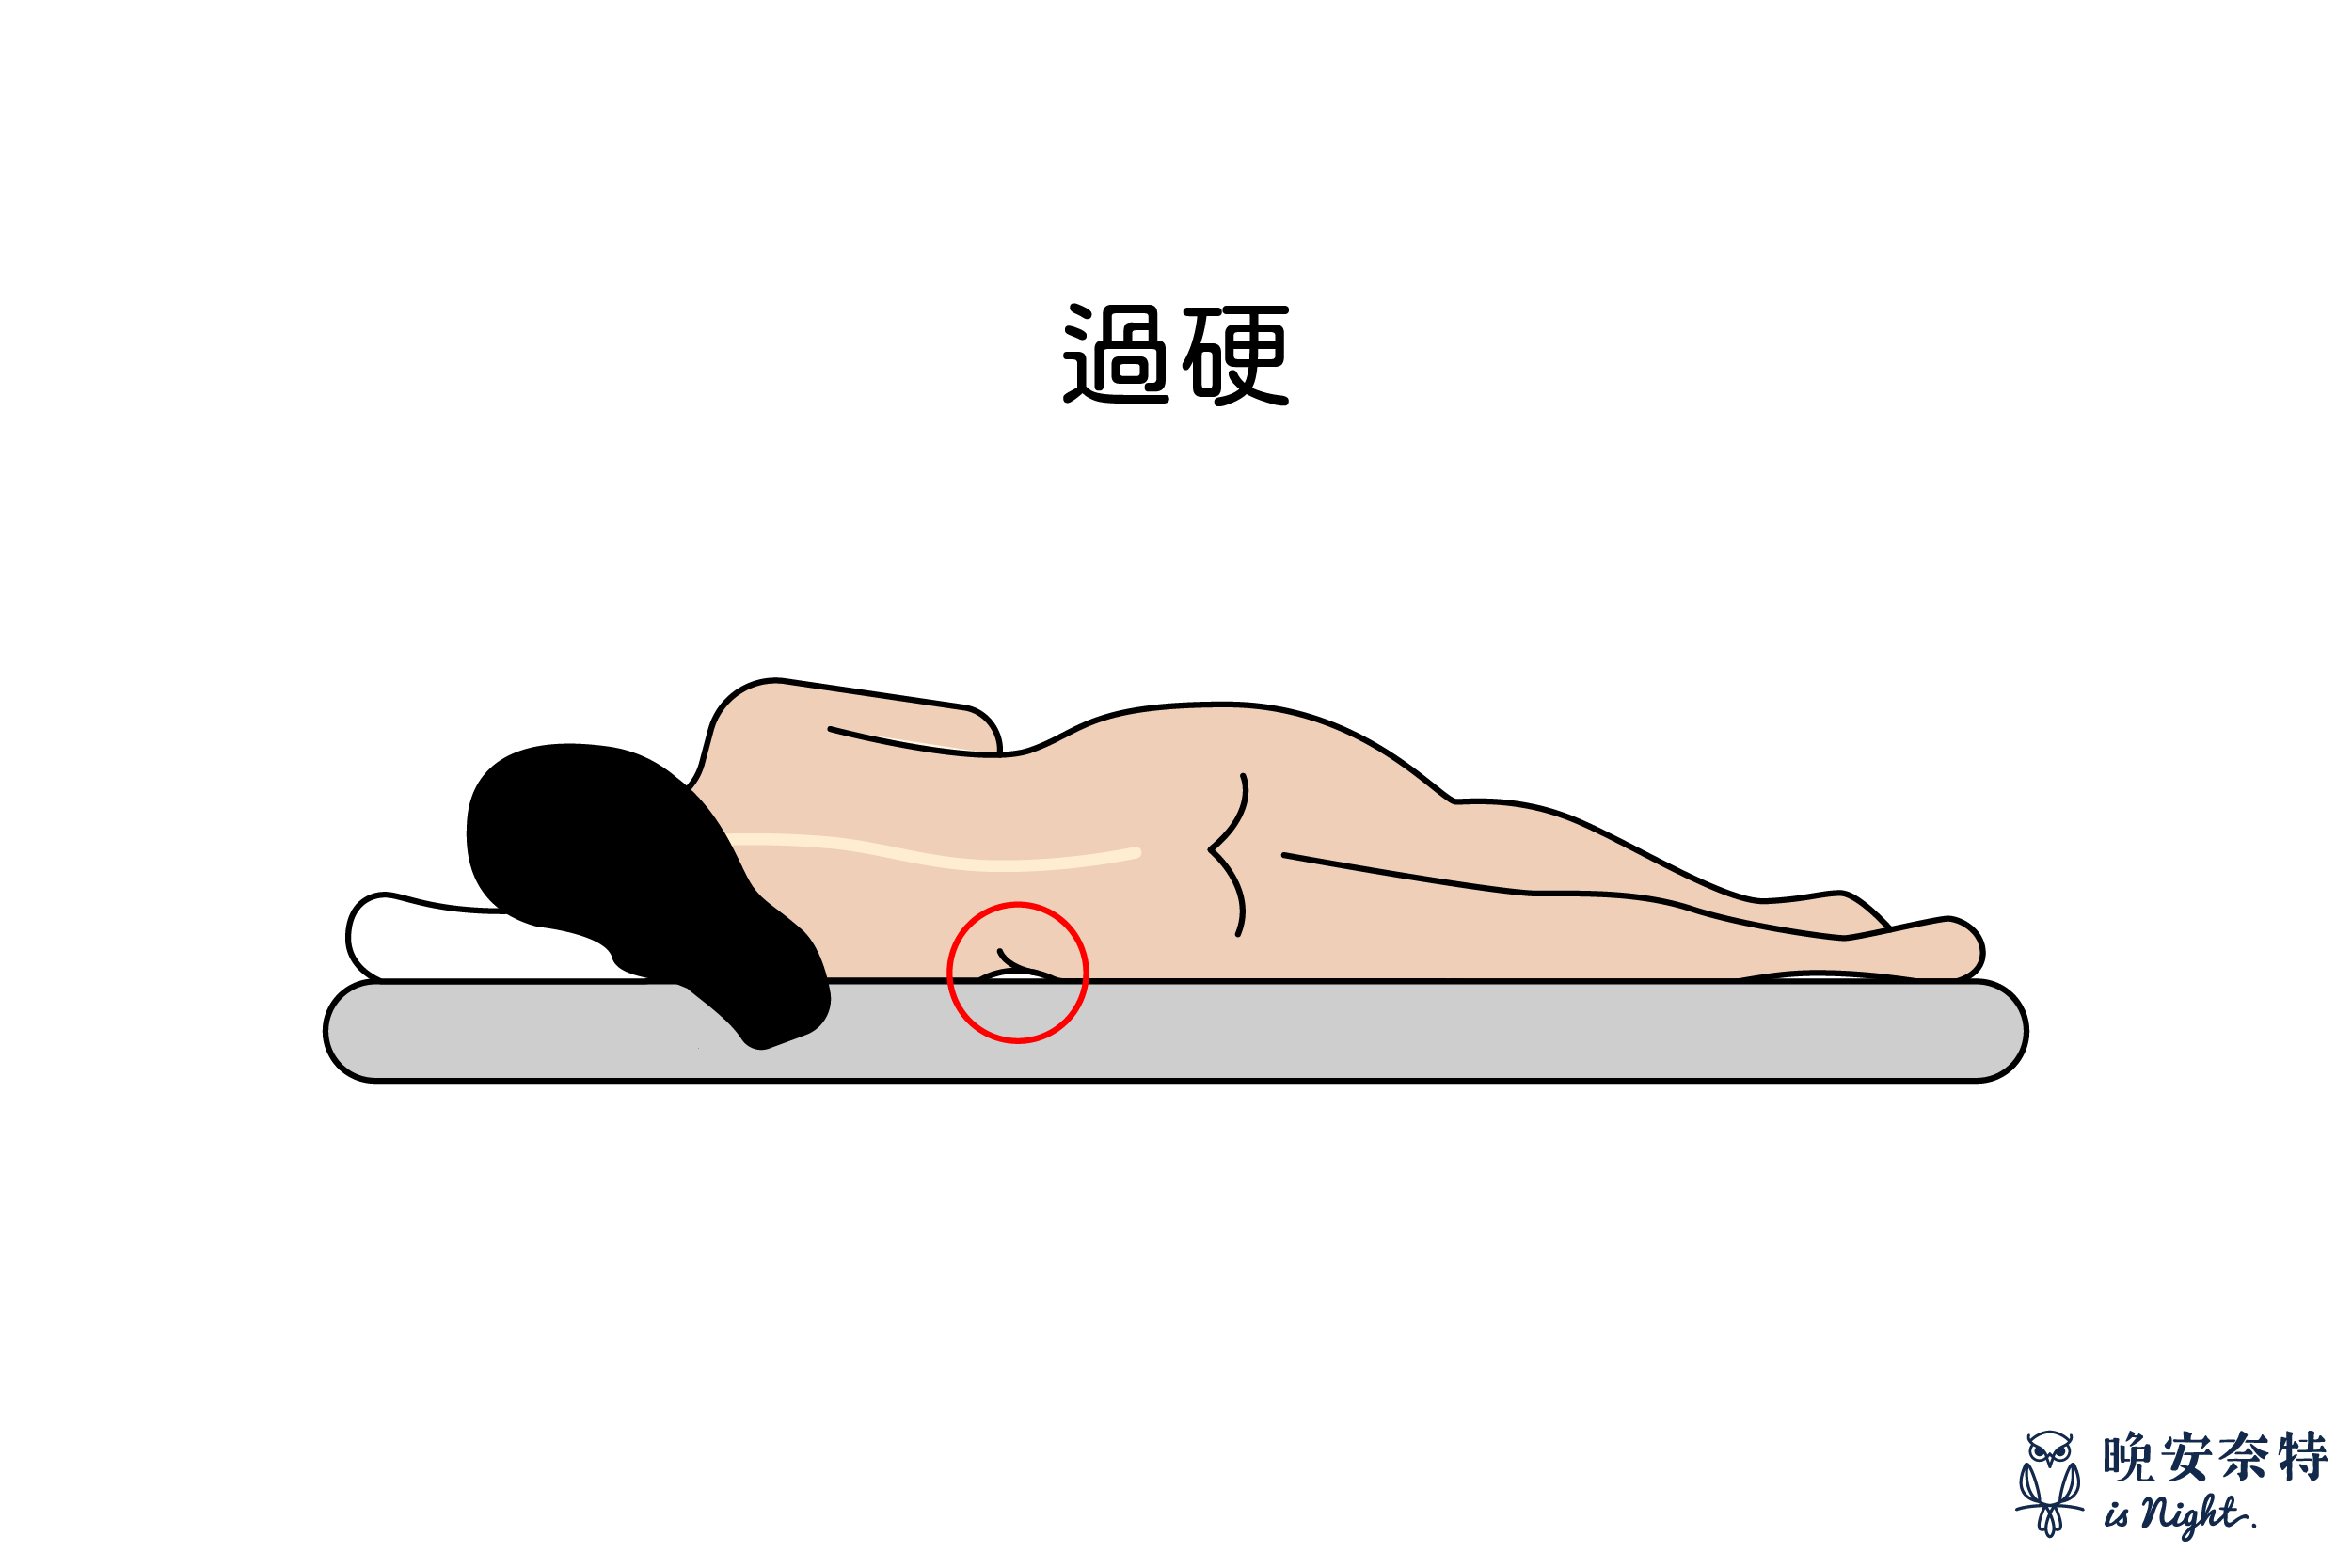 床墊軟硬度：床墊過軟，若缺乏支撐度，很容易導致腰痠背痛以及脊椎損害。